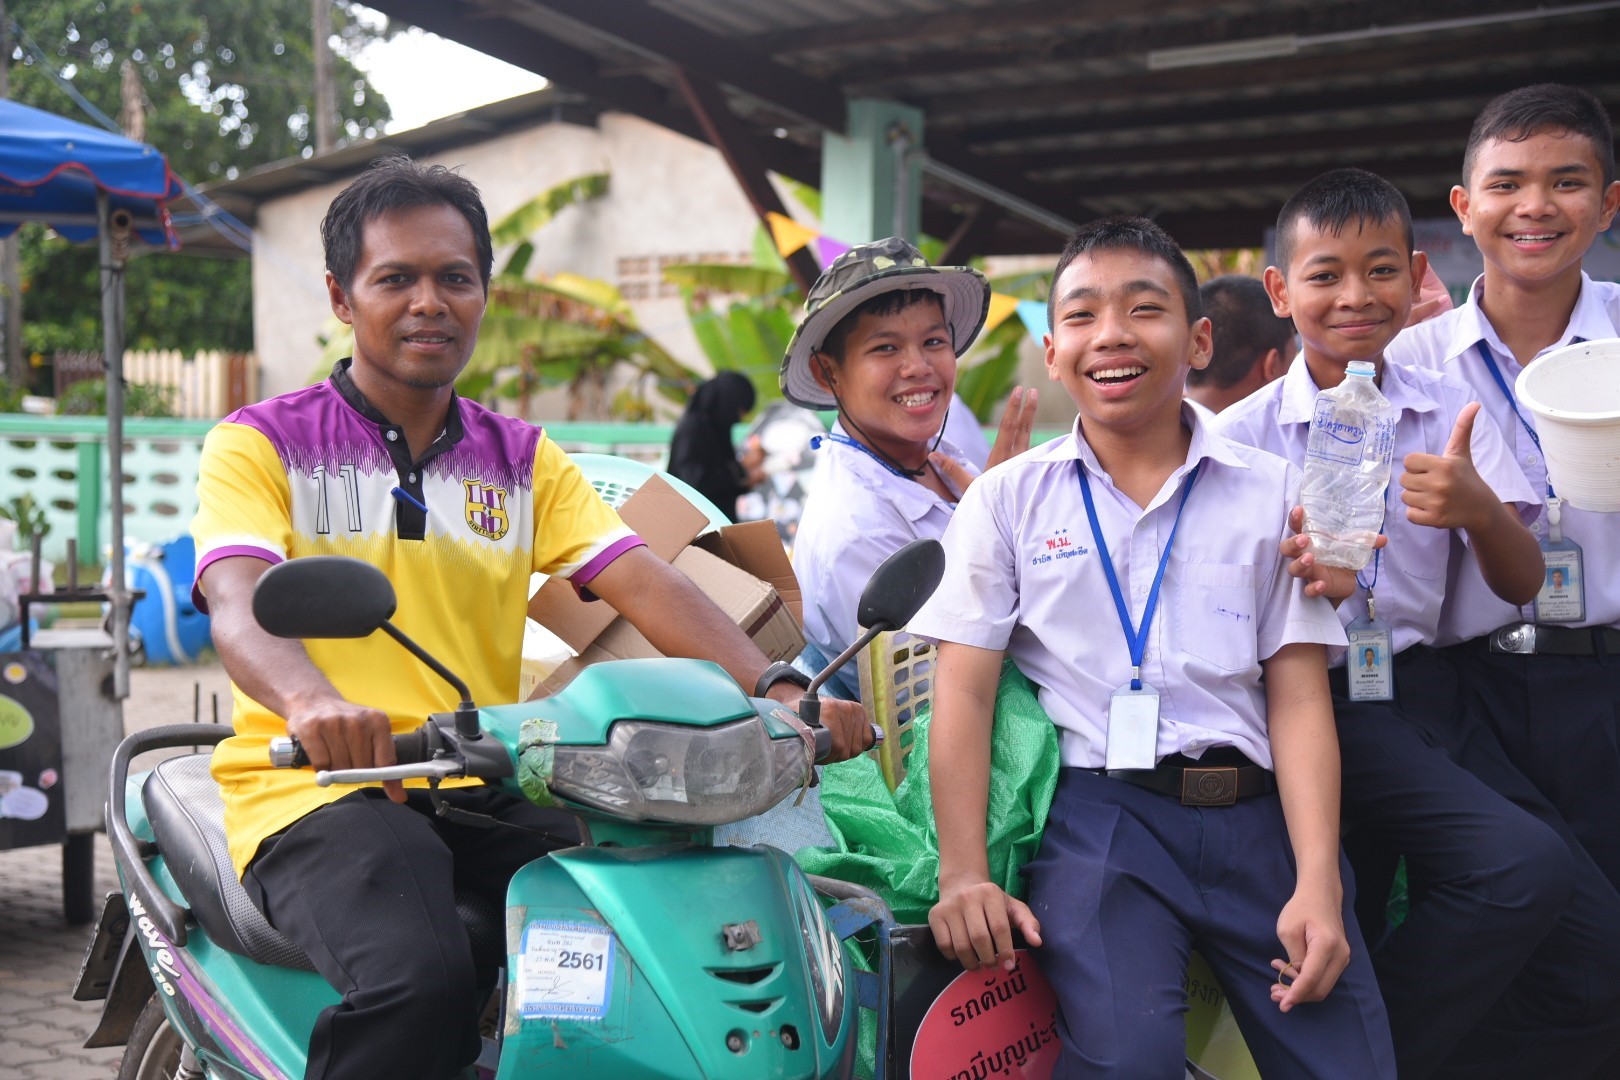  สสส. เปิดตัว “มหาวิชชาลัยปริกเพื่อการพัฒนาอย่างยั่งยืน”  thaihealth